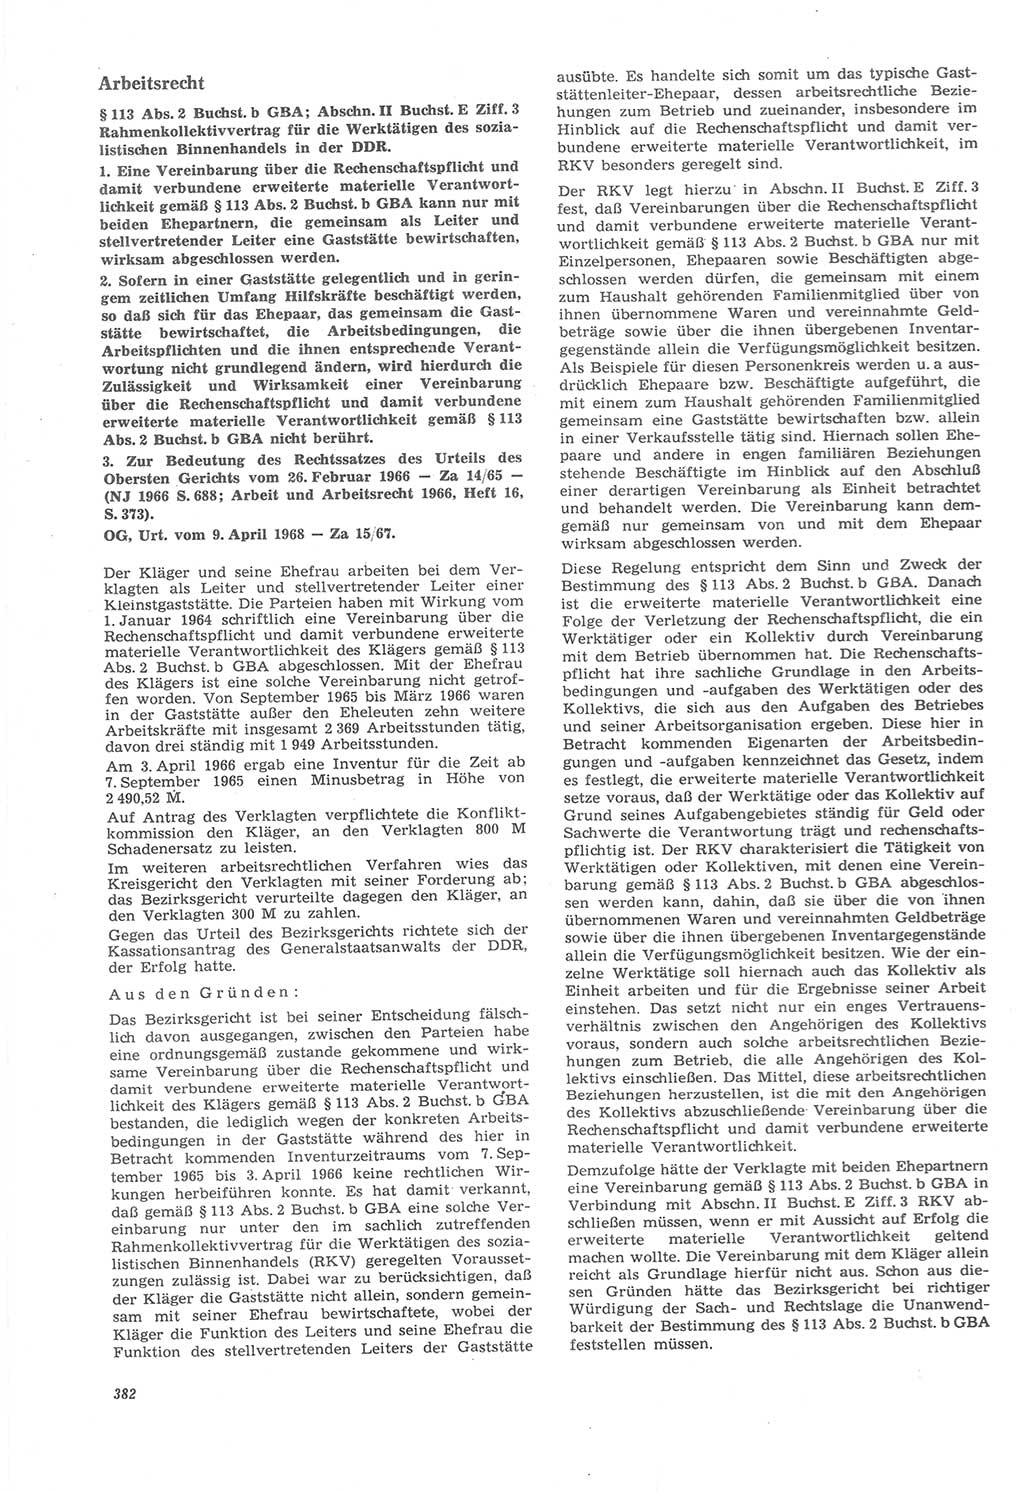 Neue Justiz (NJ), Zeitschrift für Recht und Rechtswissenschaft [Deutsche Demokratische Republik (DDR)], 22. Jahrgang 1968, Seite 382 (NJ DDR 1968, S. 382)